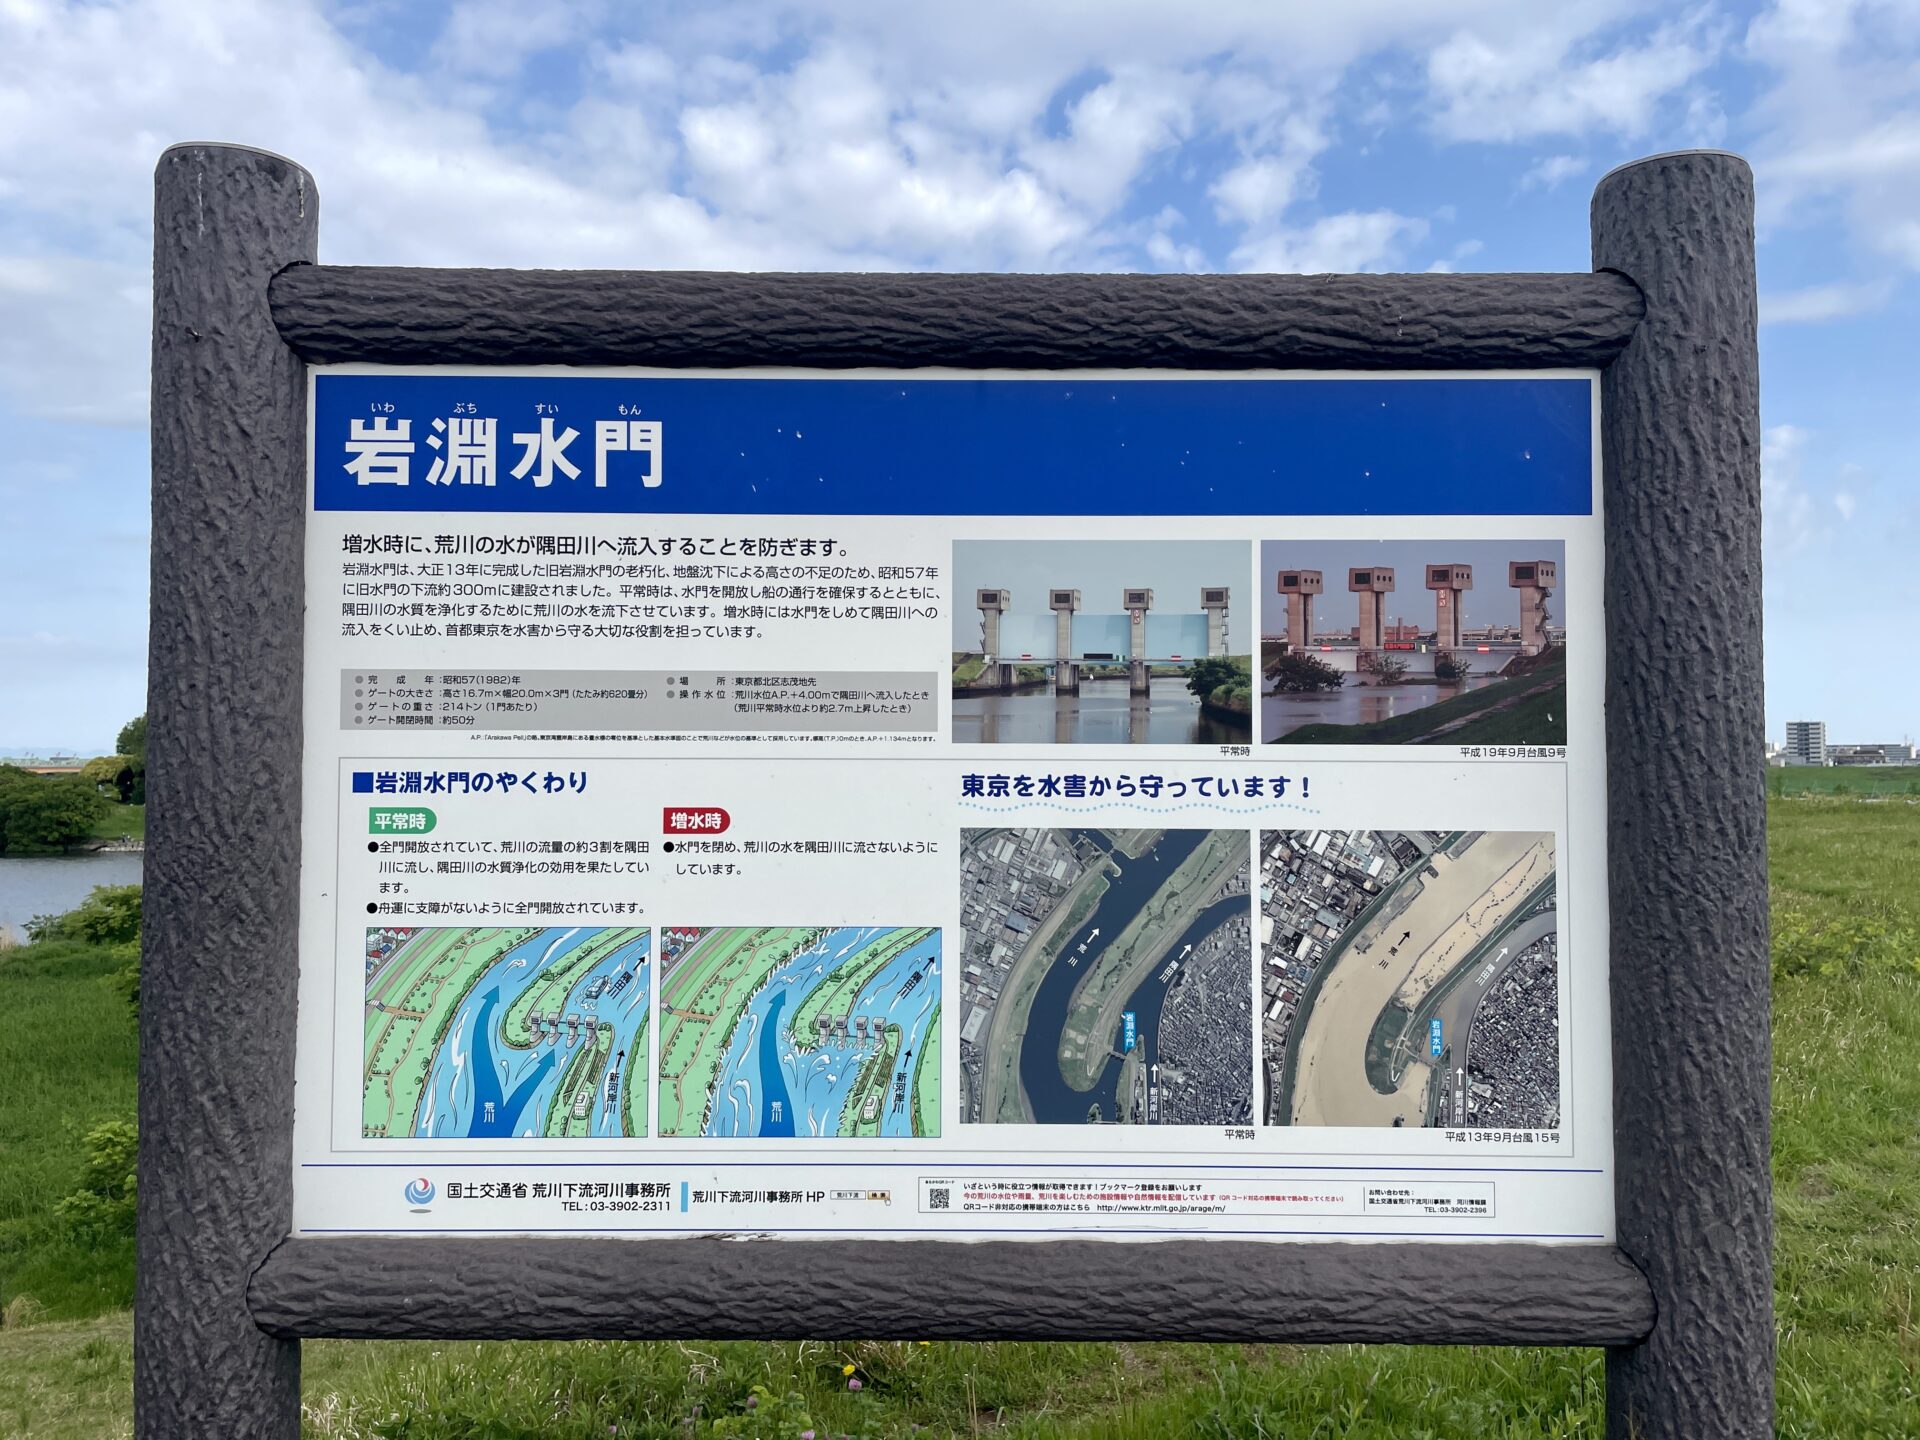 隅田川ウォーキング 岩淵水門の説明